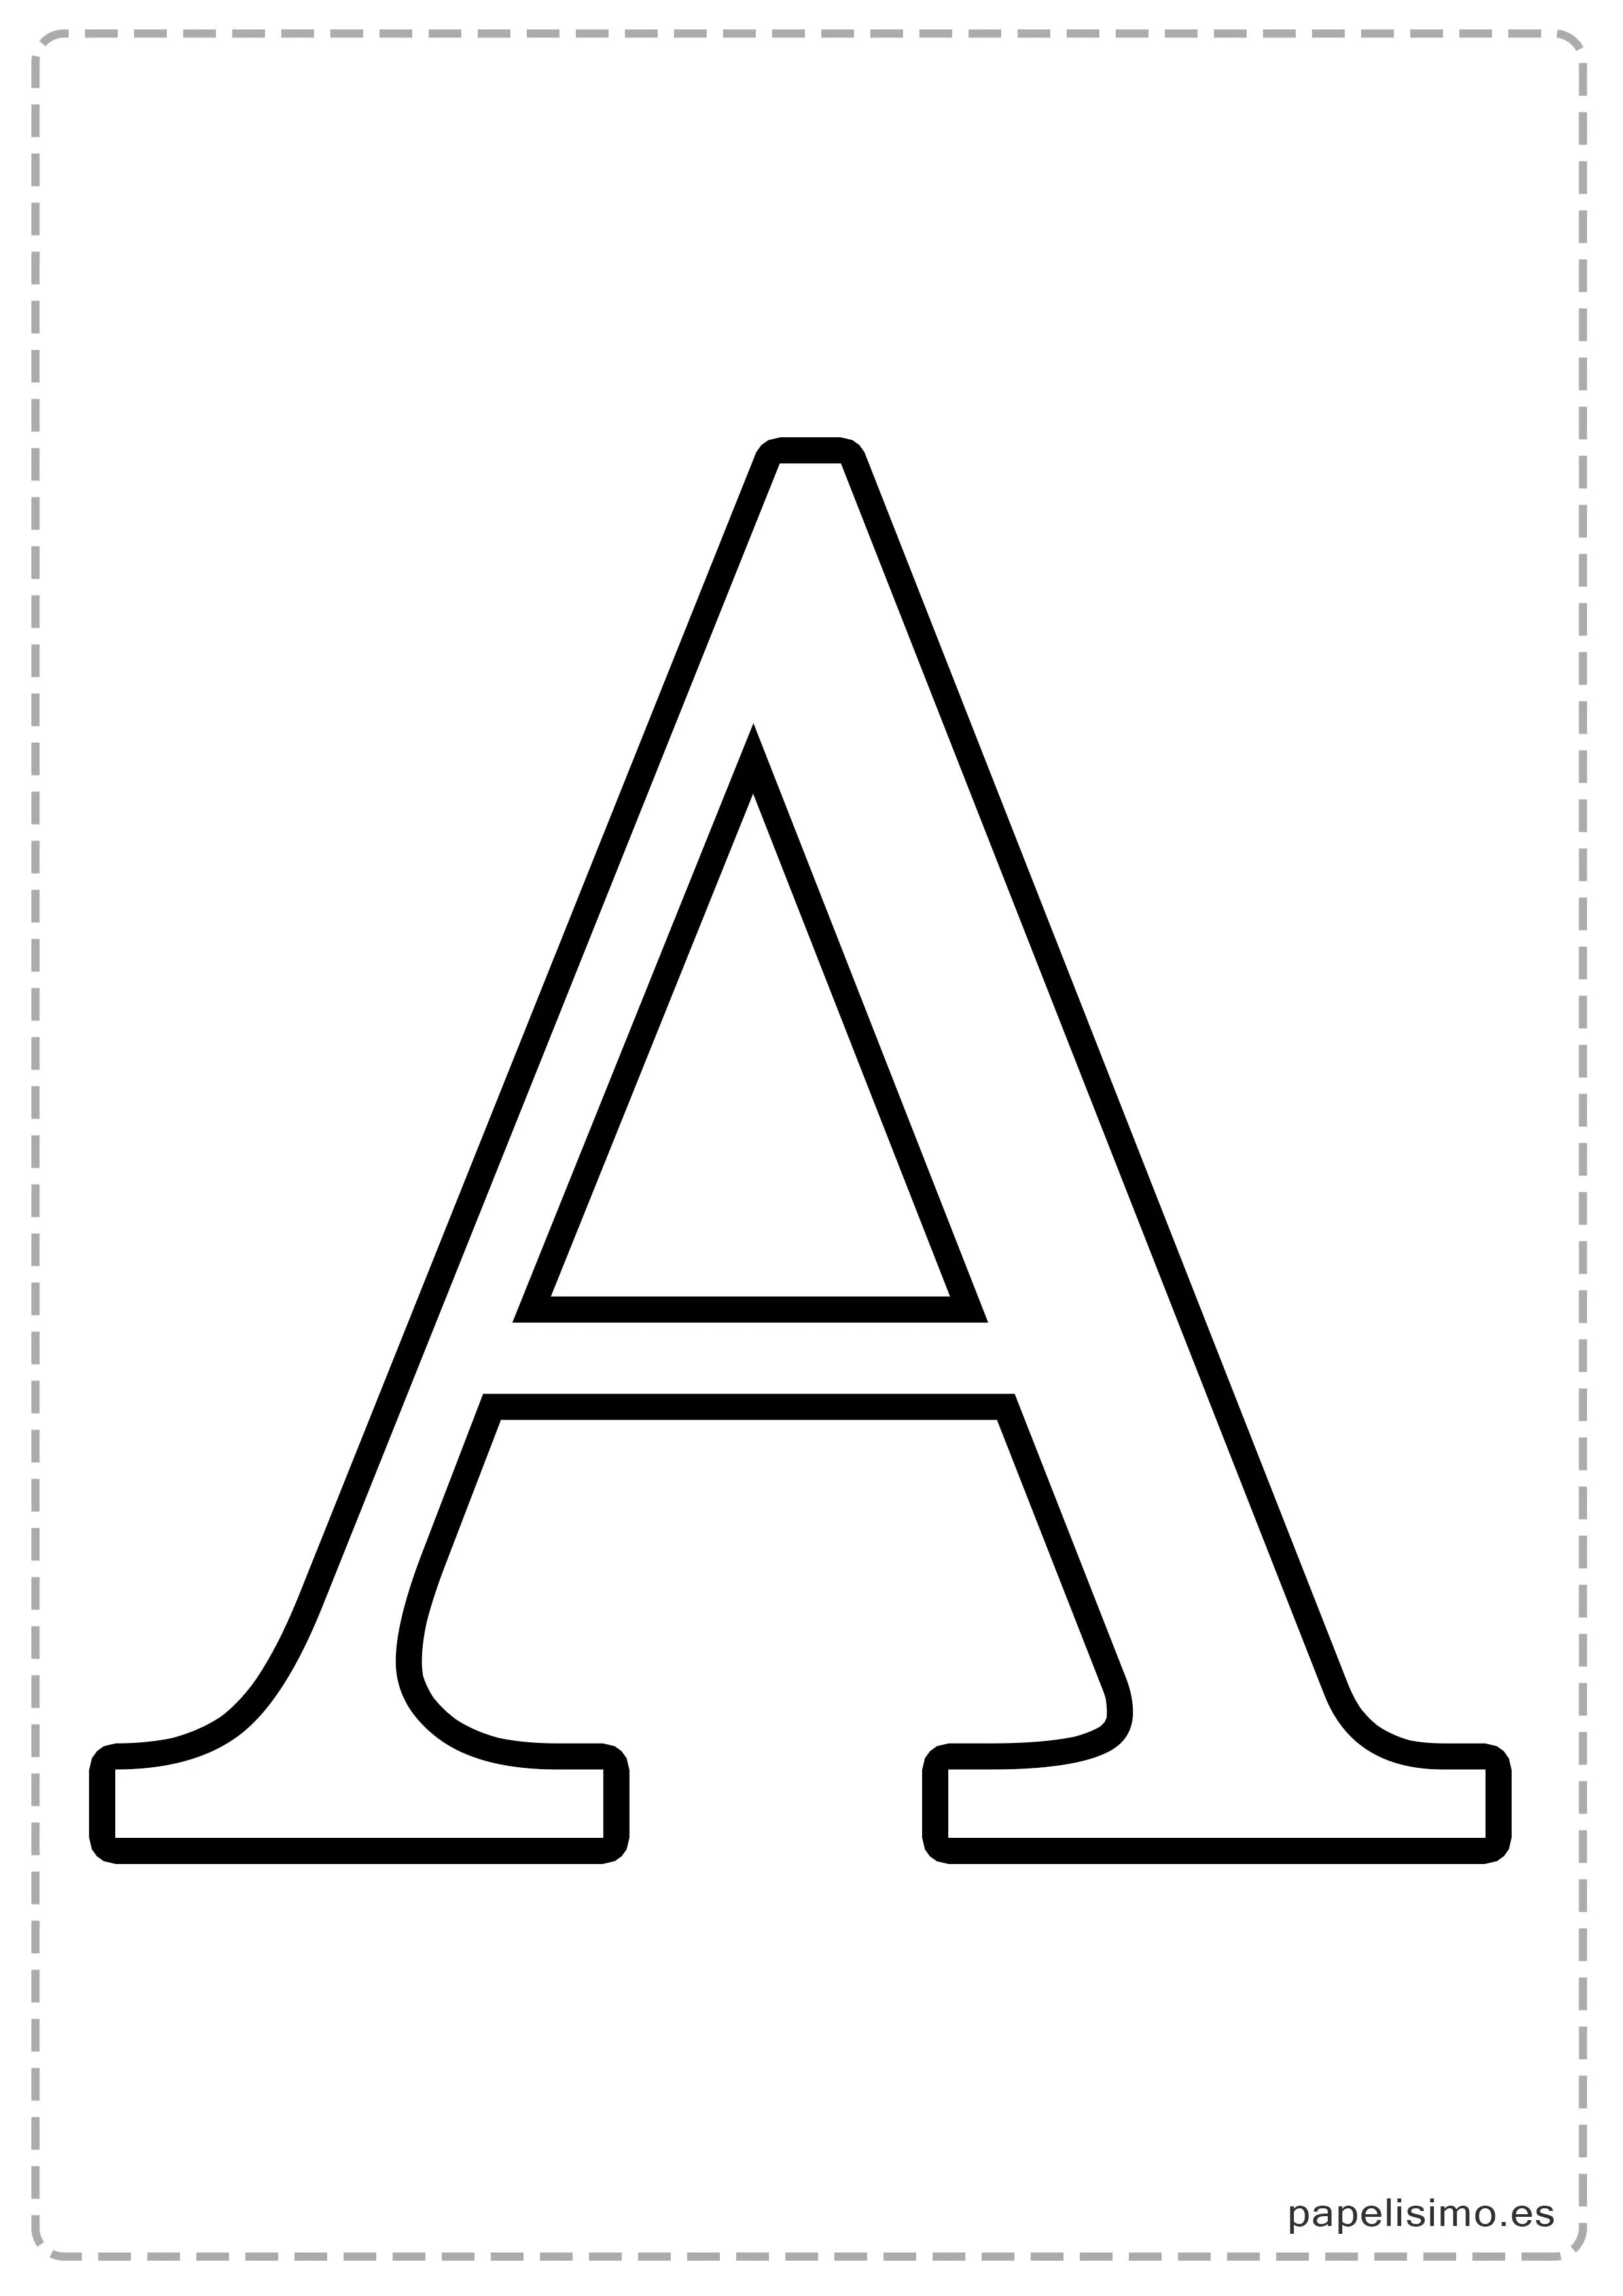 Letras grandes para imprimir - PAPELISIMO